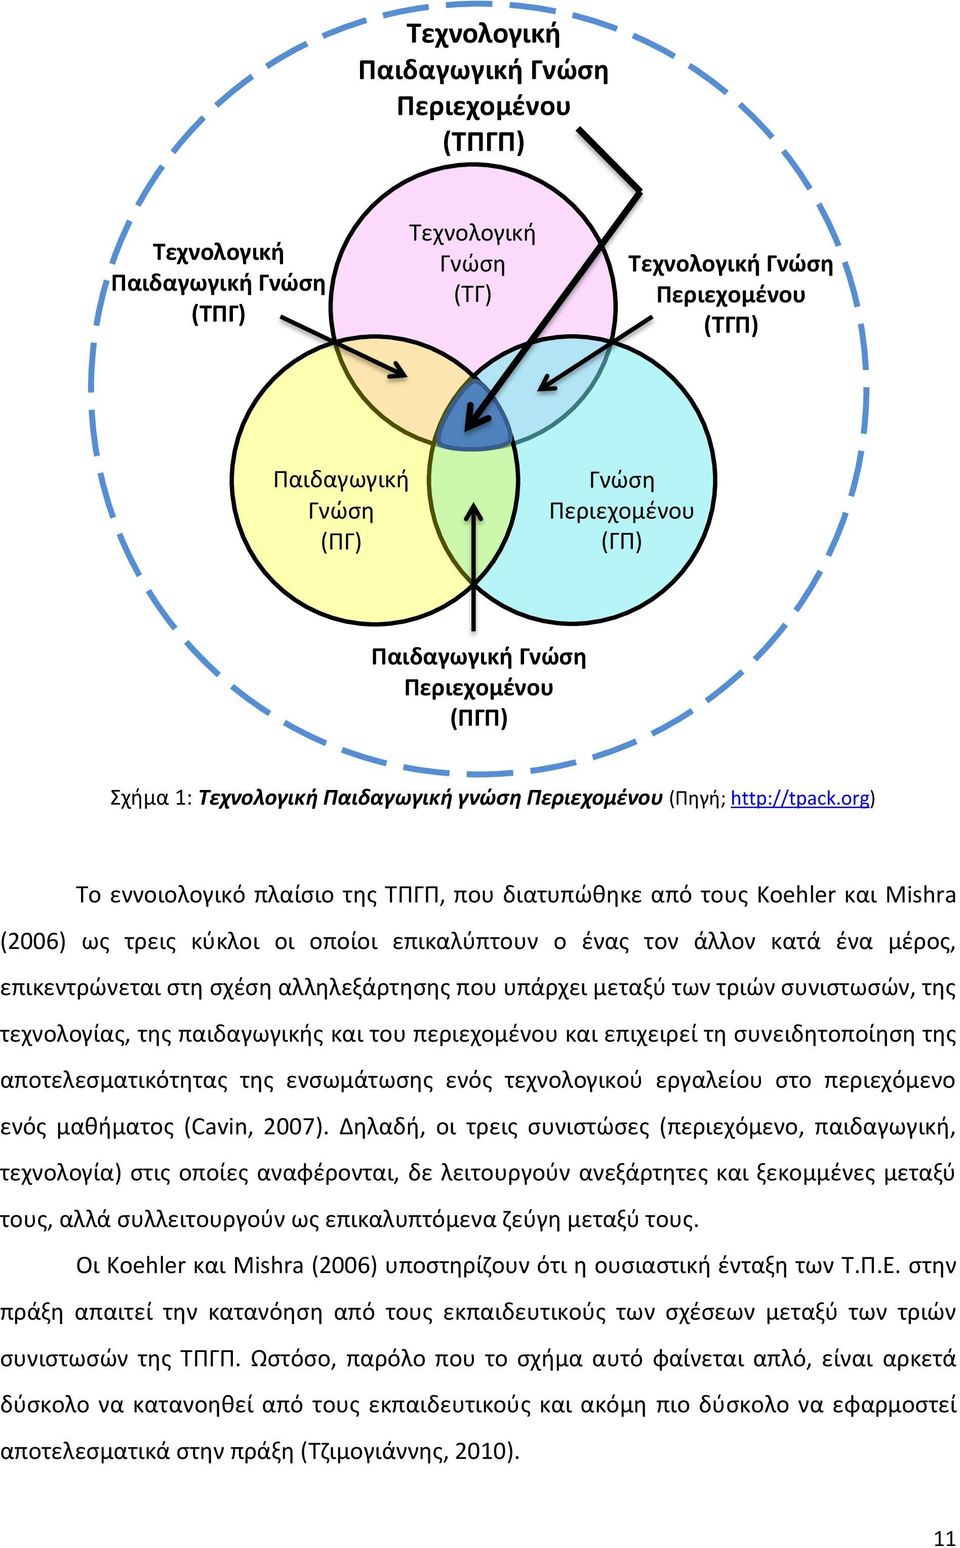 org) Το εννοιολογικό πλαίσιο της ΤΠΓΠ, που διατυπώθηκε από τους Koehler και Mishra (2006) ως τρεις κύκλοι οι οποίοι επικαλύπτουν ο ένας τον άλλον κατά ένα μέρος, επικεντρώνεται στη σχέση